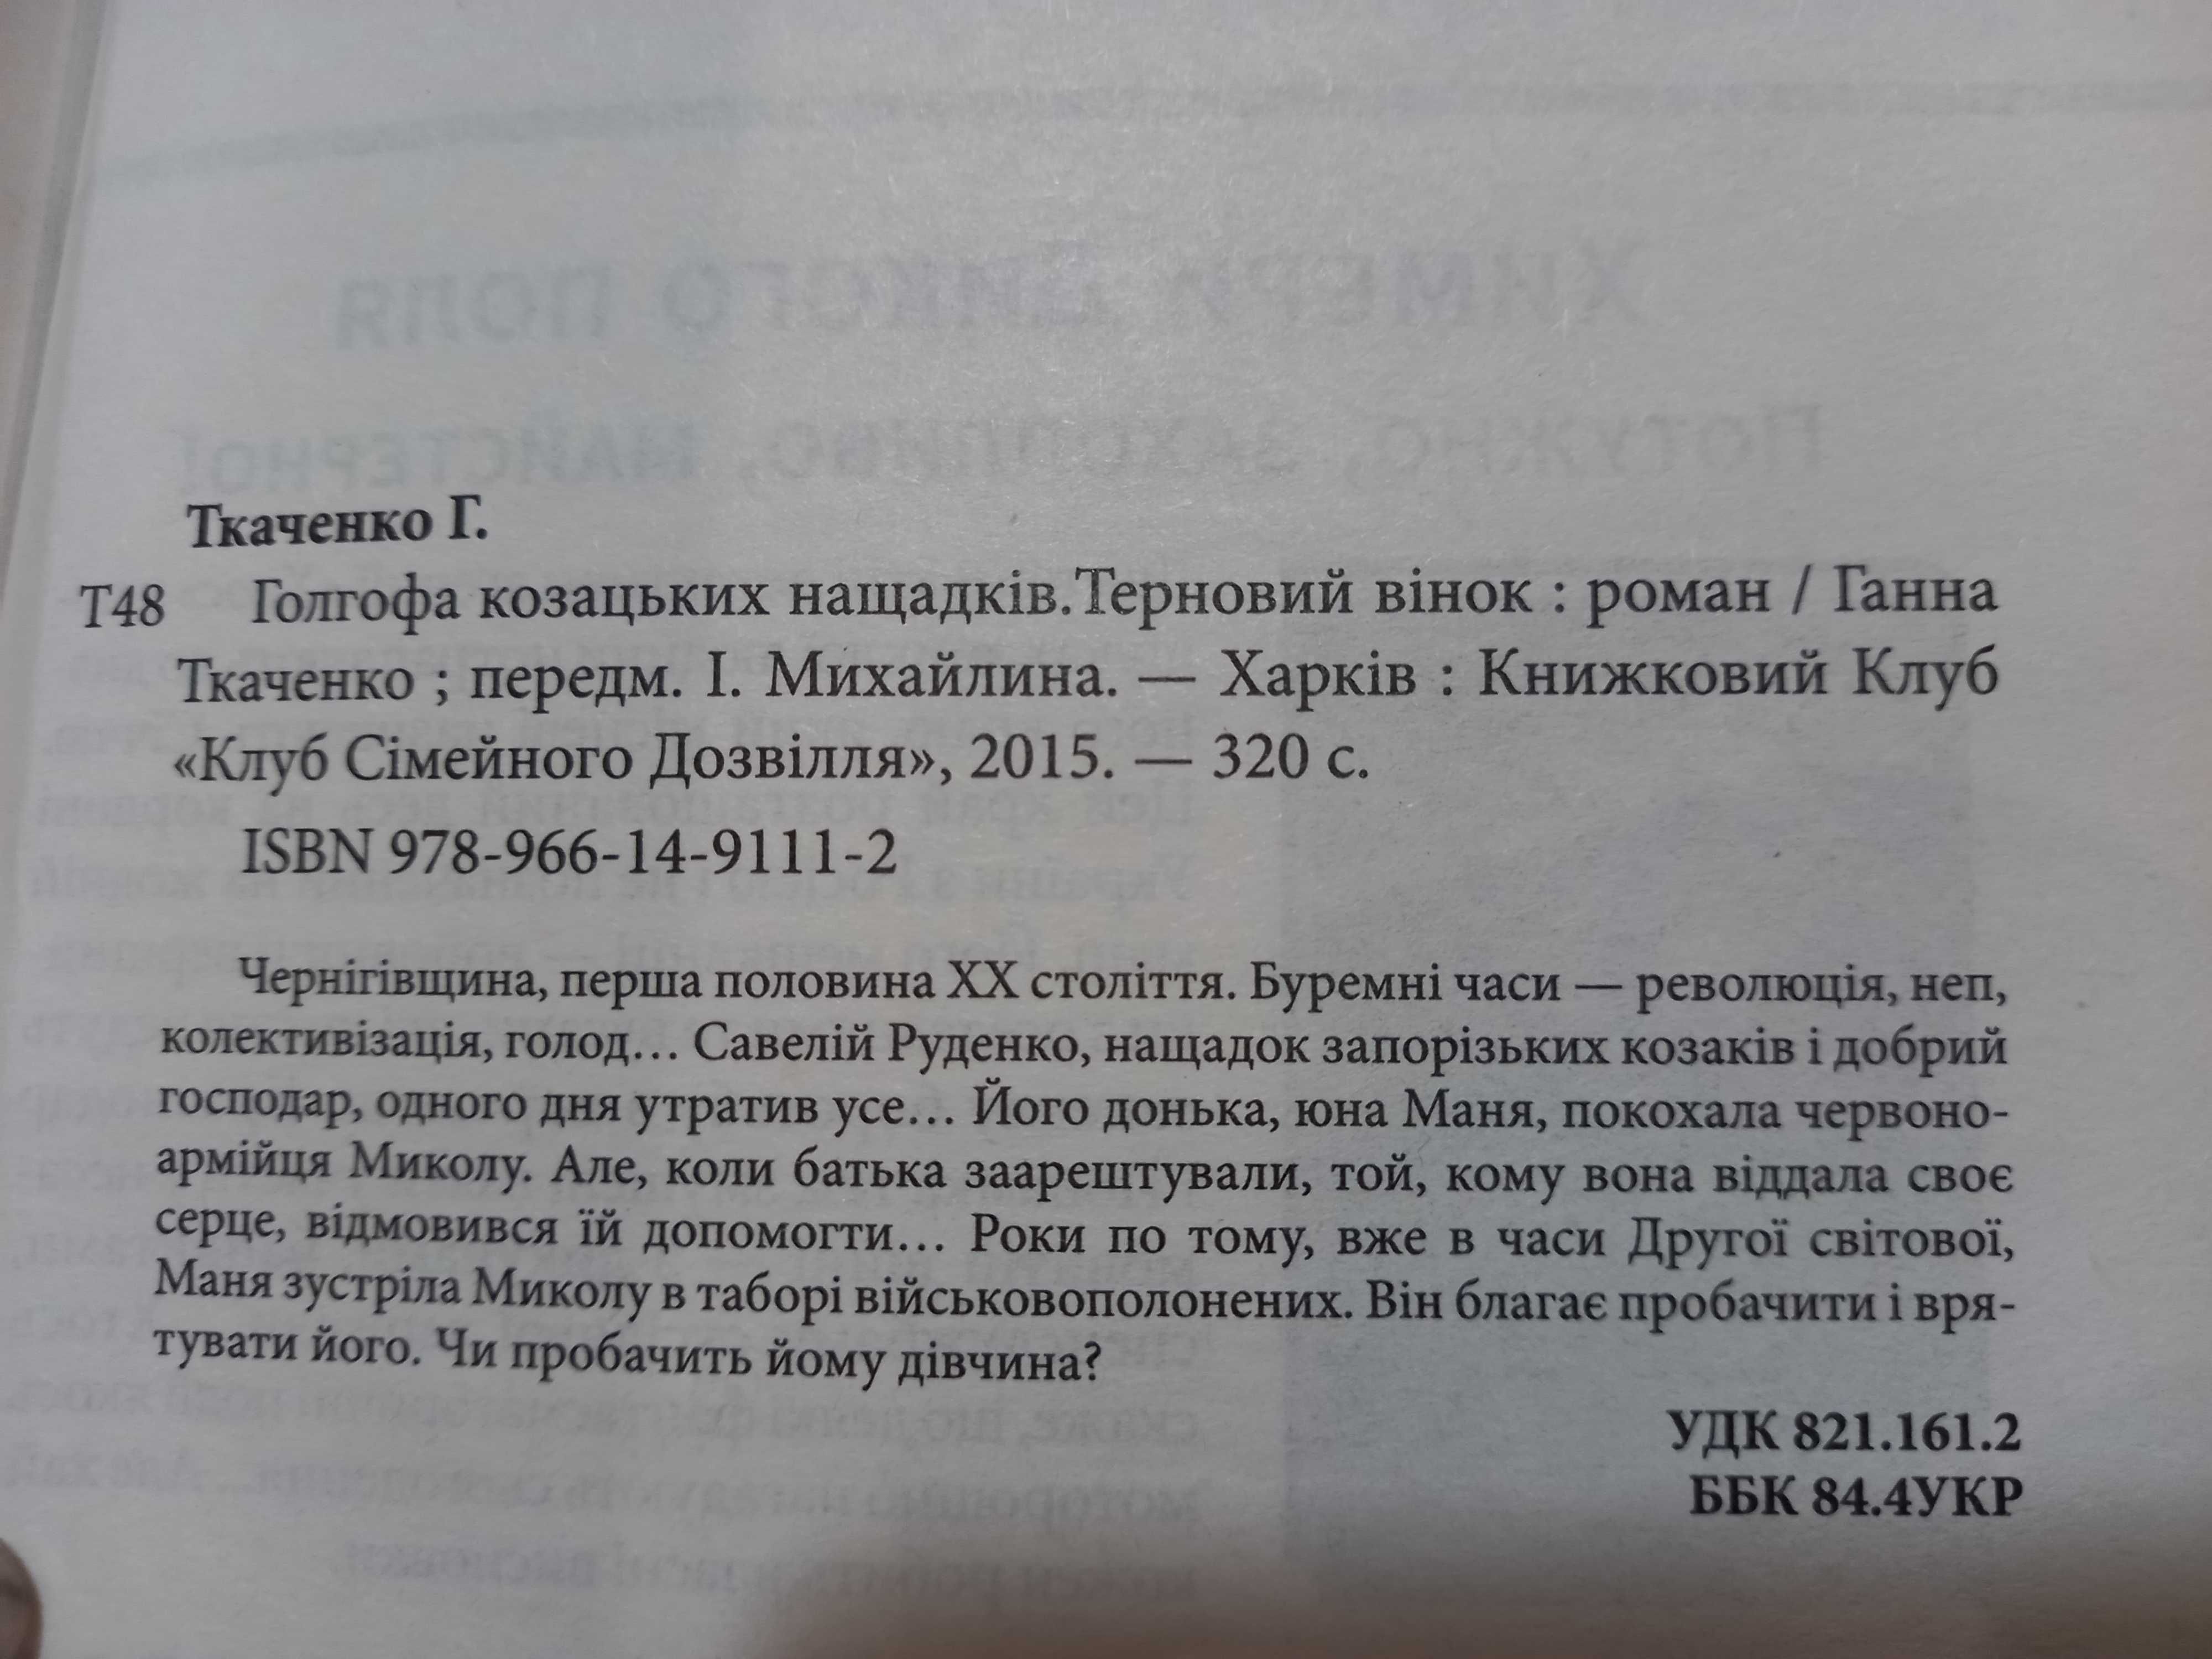 Книга Клубу Сімейного Дозвілля, українською мовою, Ганна Ткаченко.